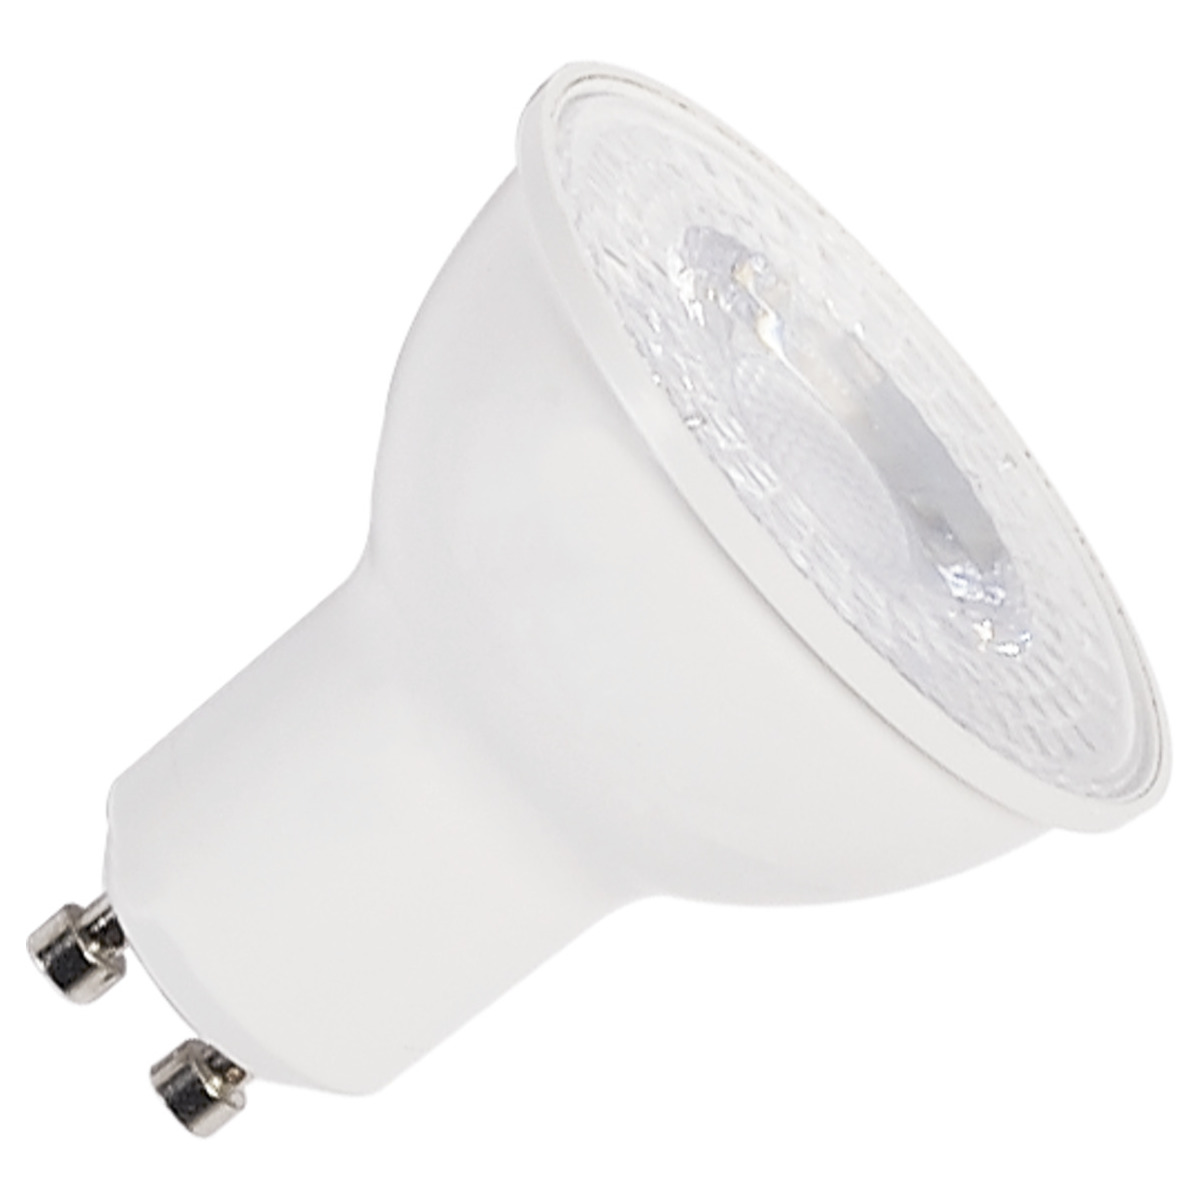 LED lightbulb QPAR51, GU10, 2700K, white